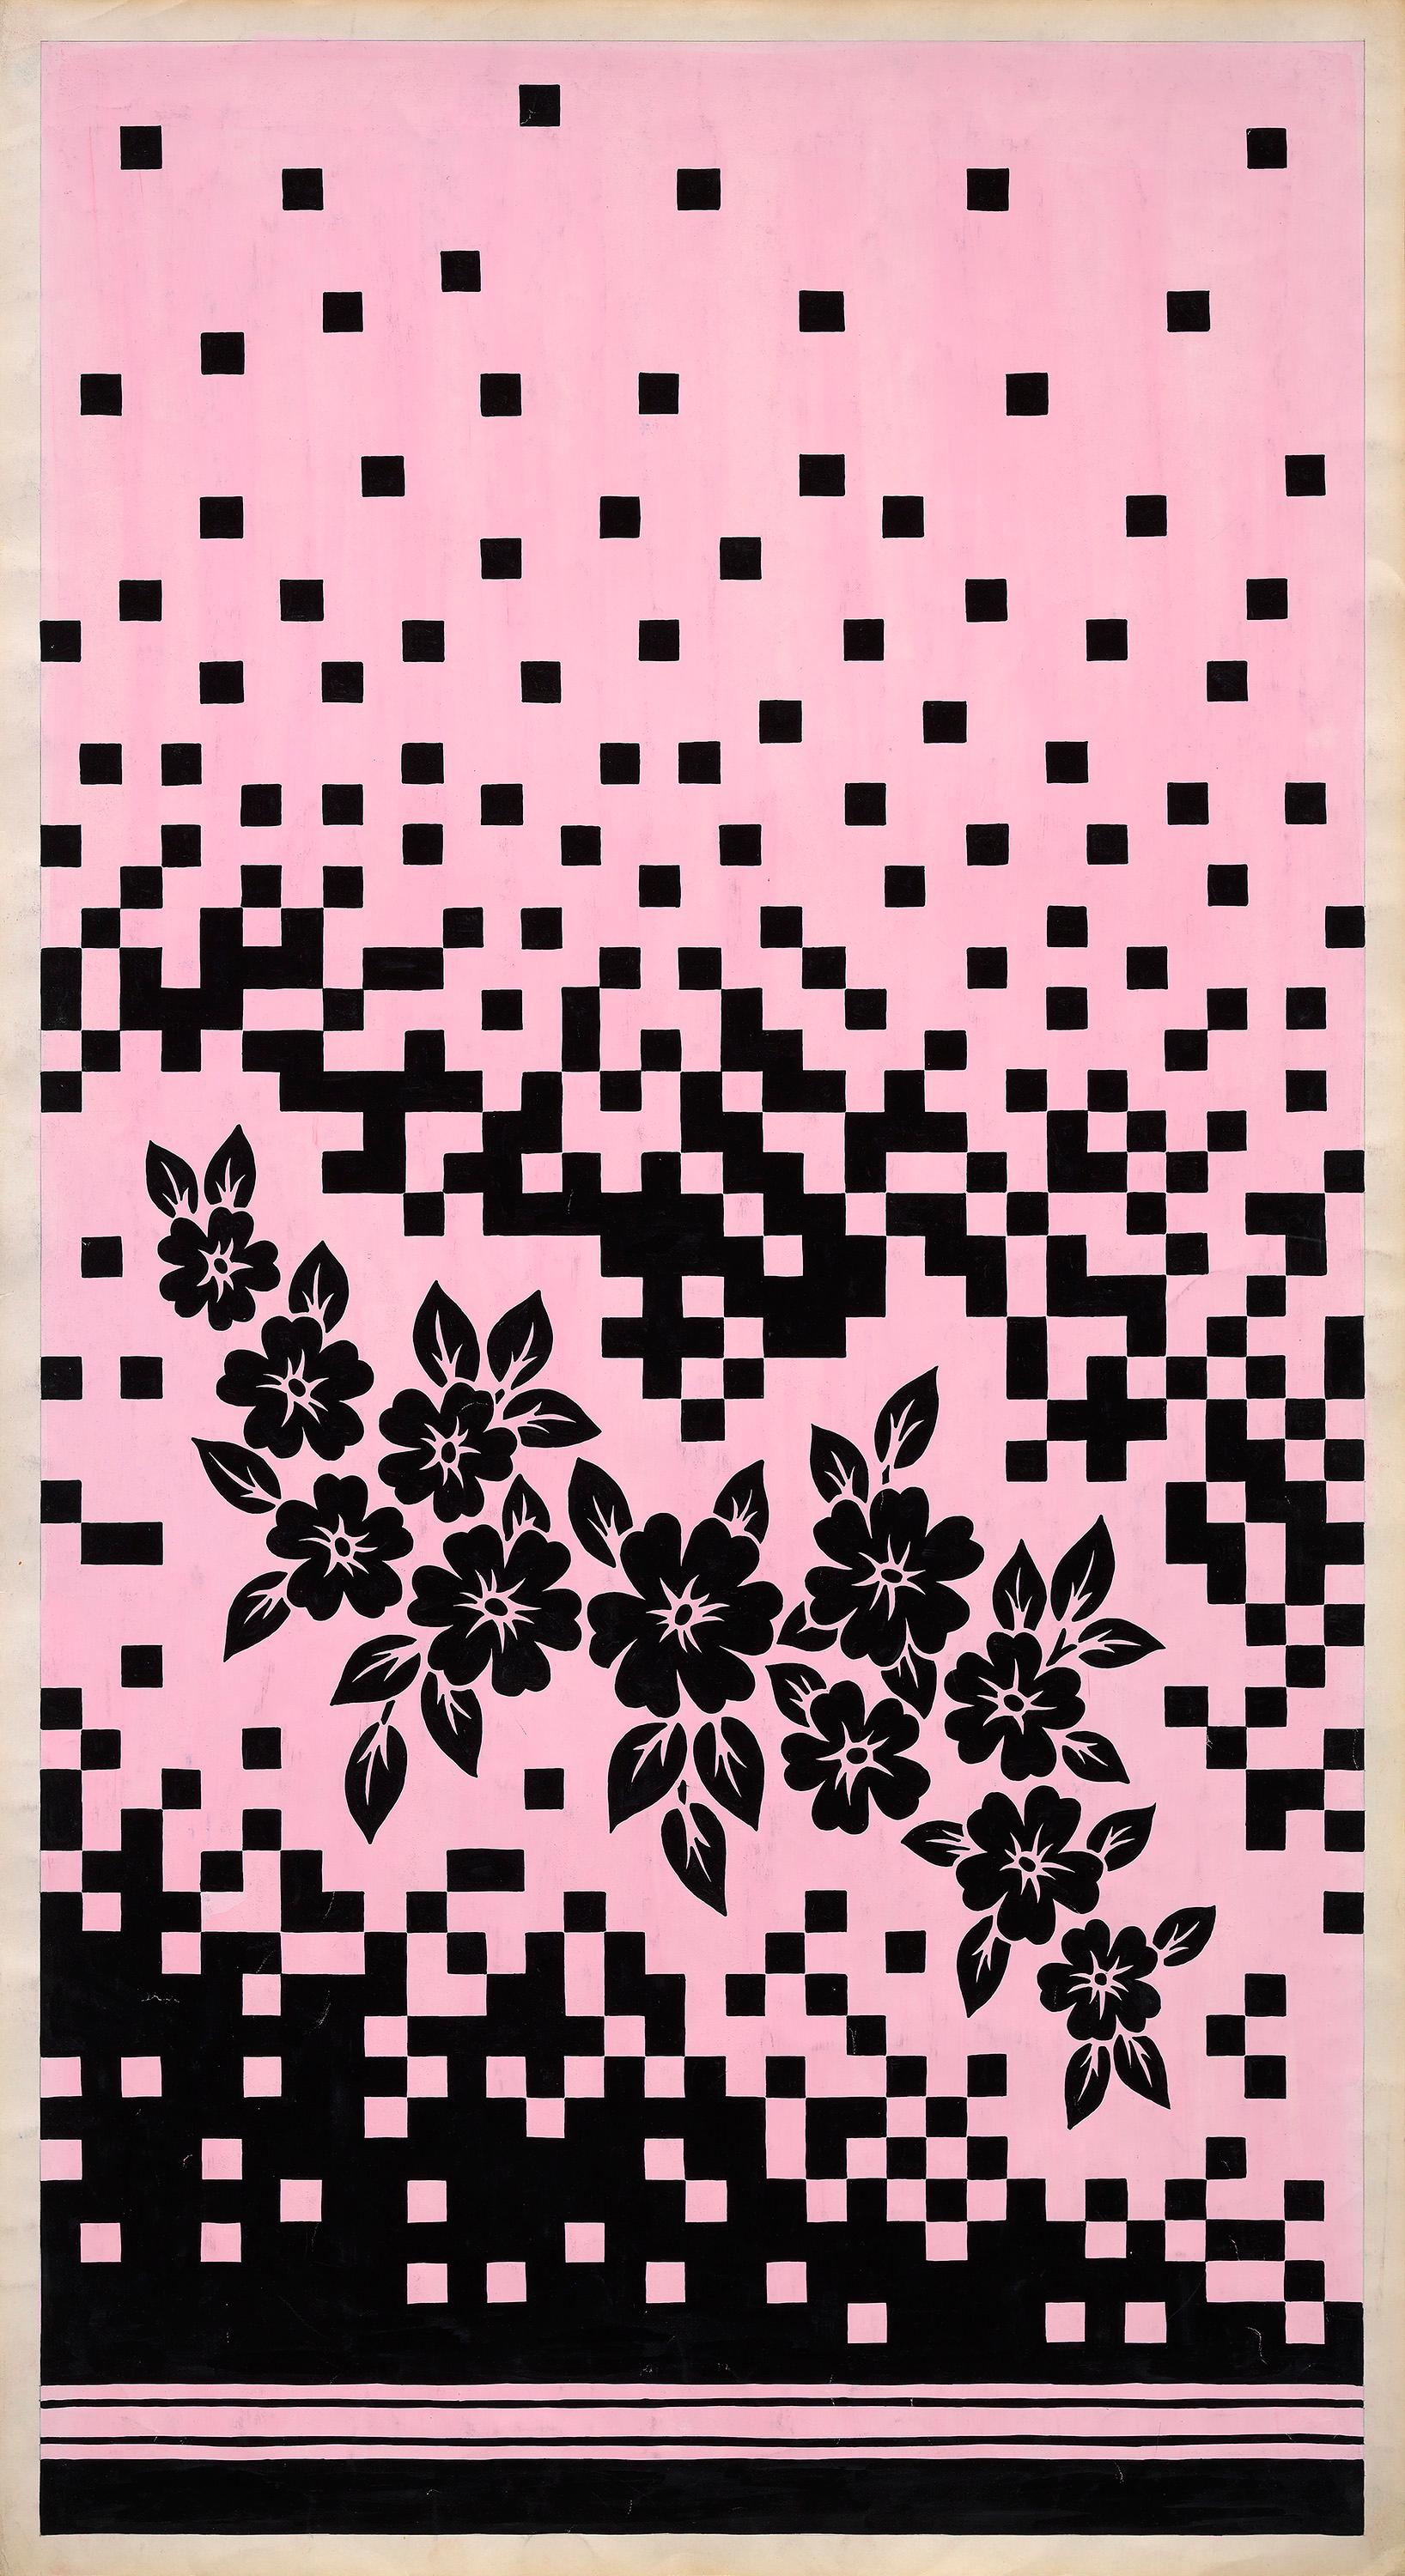 Conception textile originale des années 70 peinte à la main à la gouache, couleur rose et noire sur papier